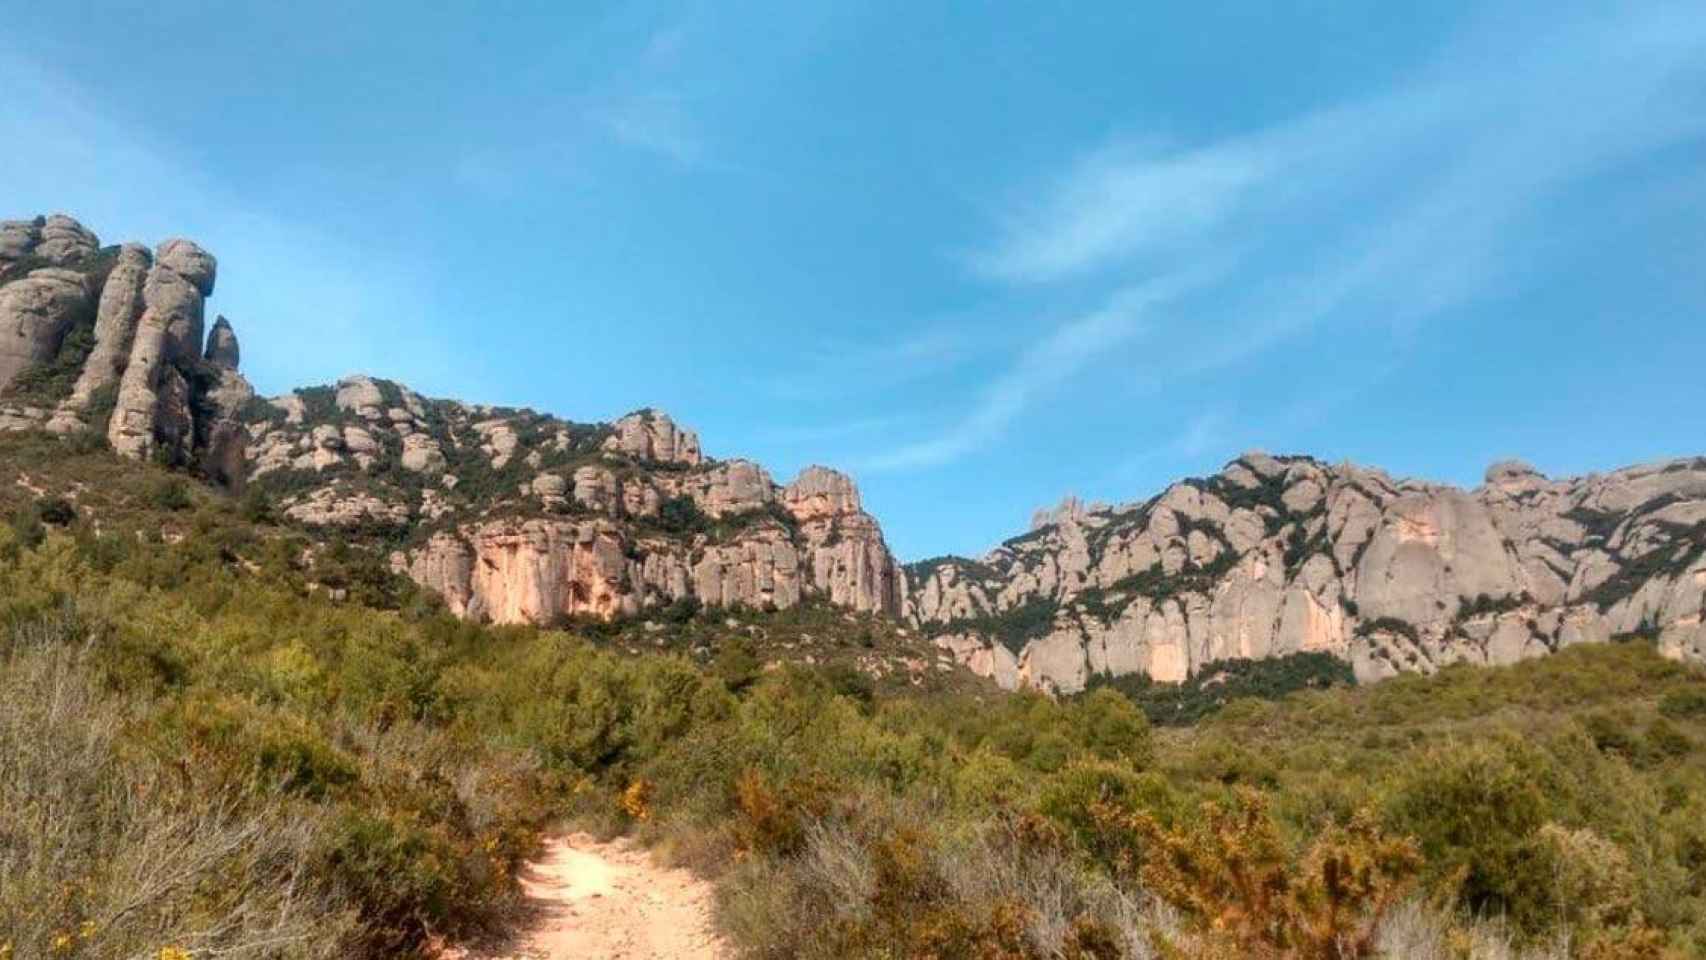 Imagen de un camino público en la falda de la montaña de Montserrat / EUROPA PRESS